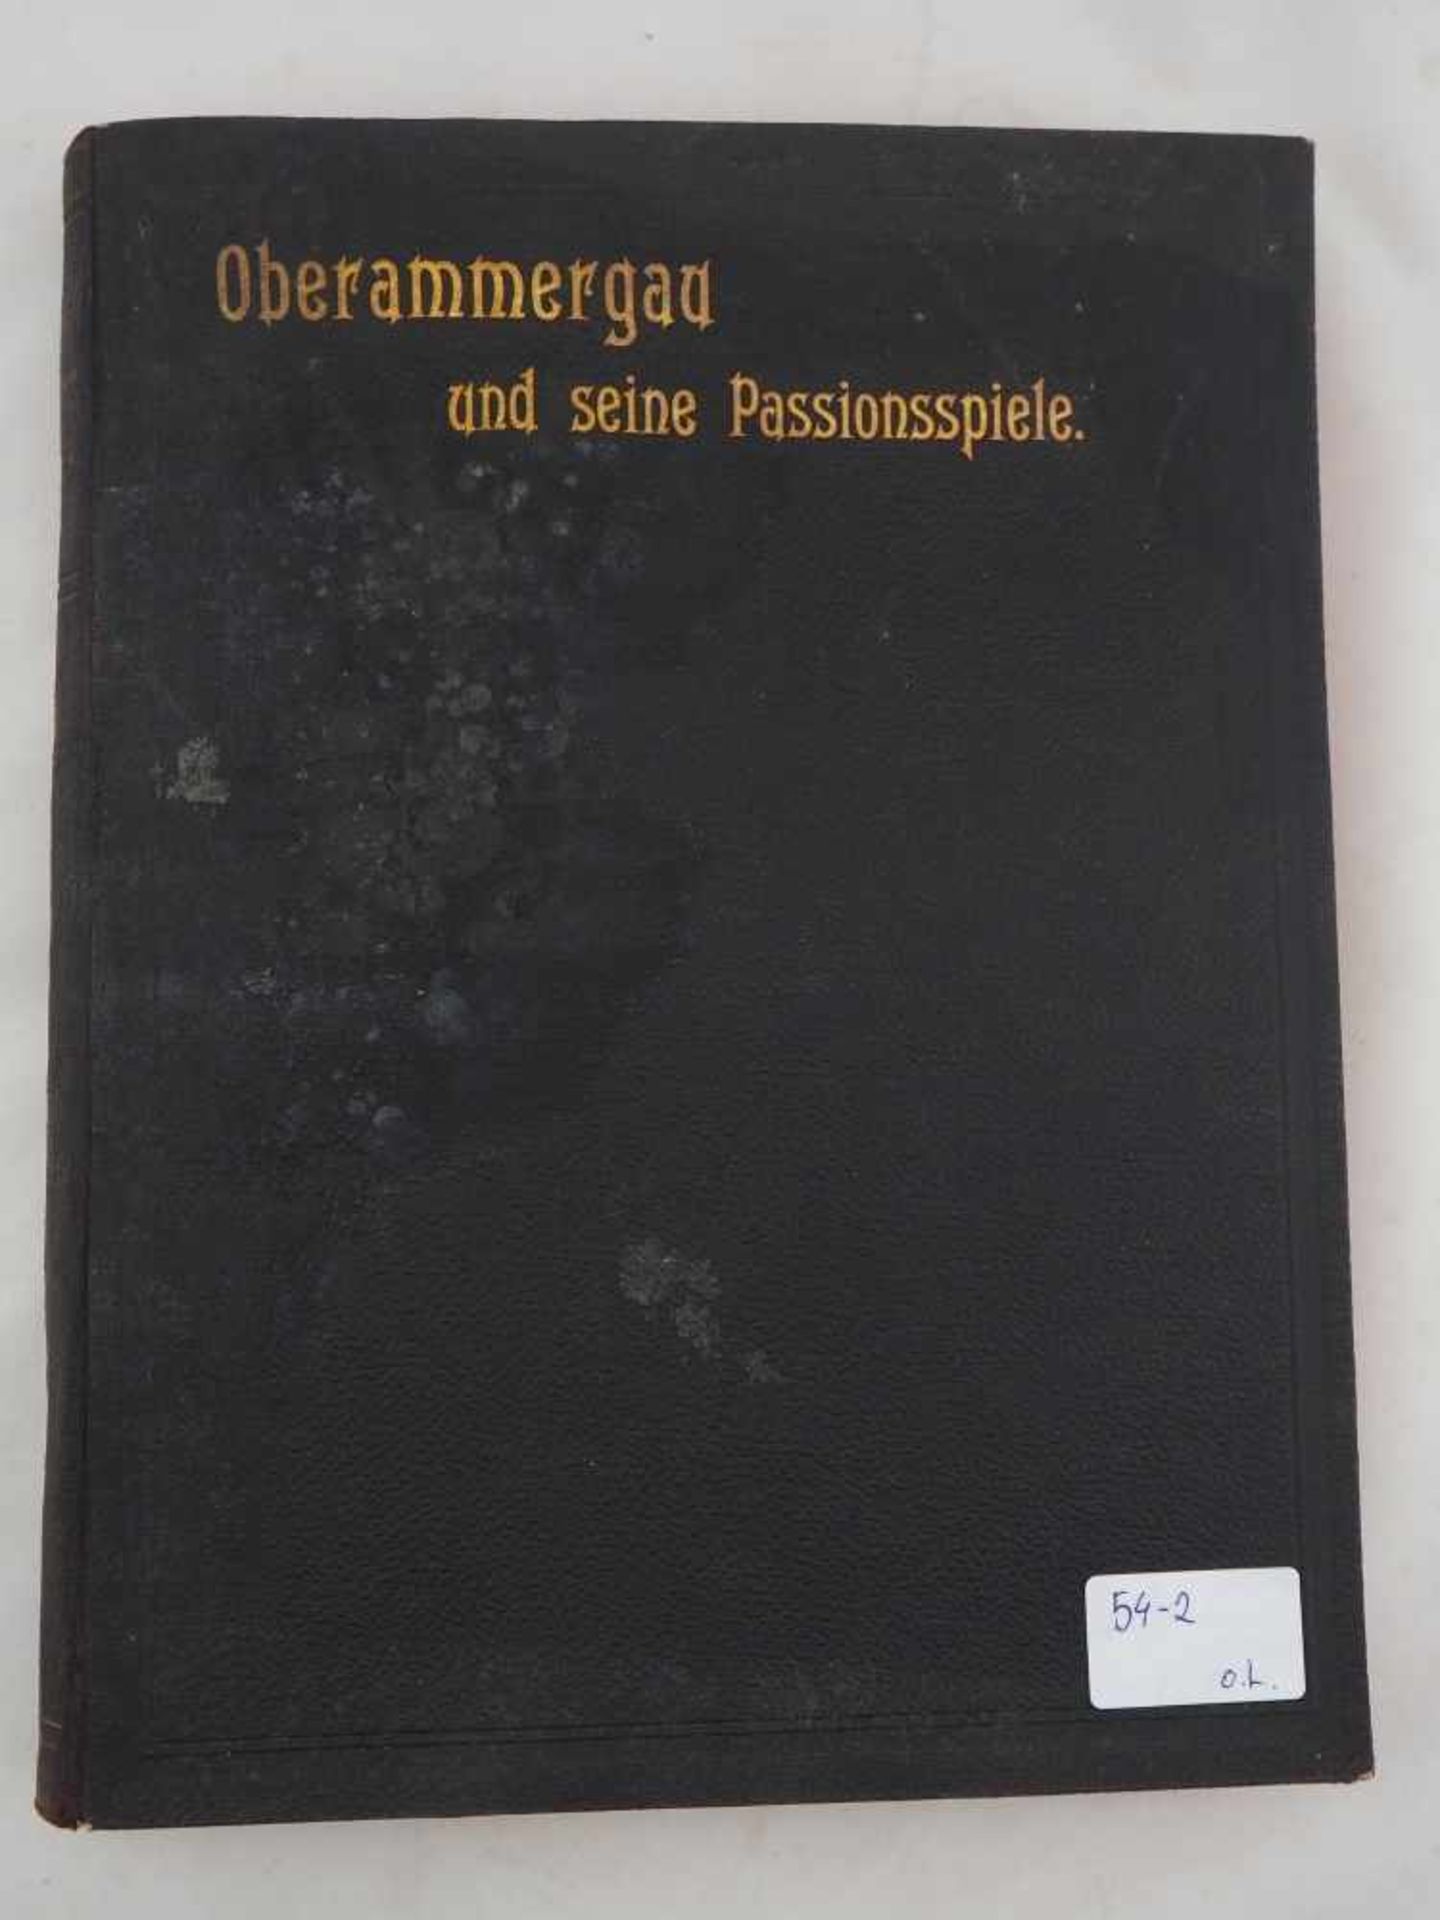 Buch: Oberammergau und seine PassionsspieleEin Rückblick über die Geschichte Oberammergaus und